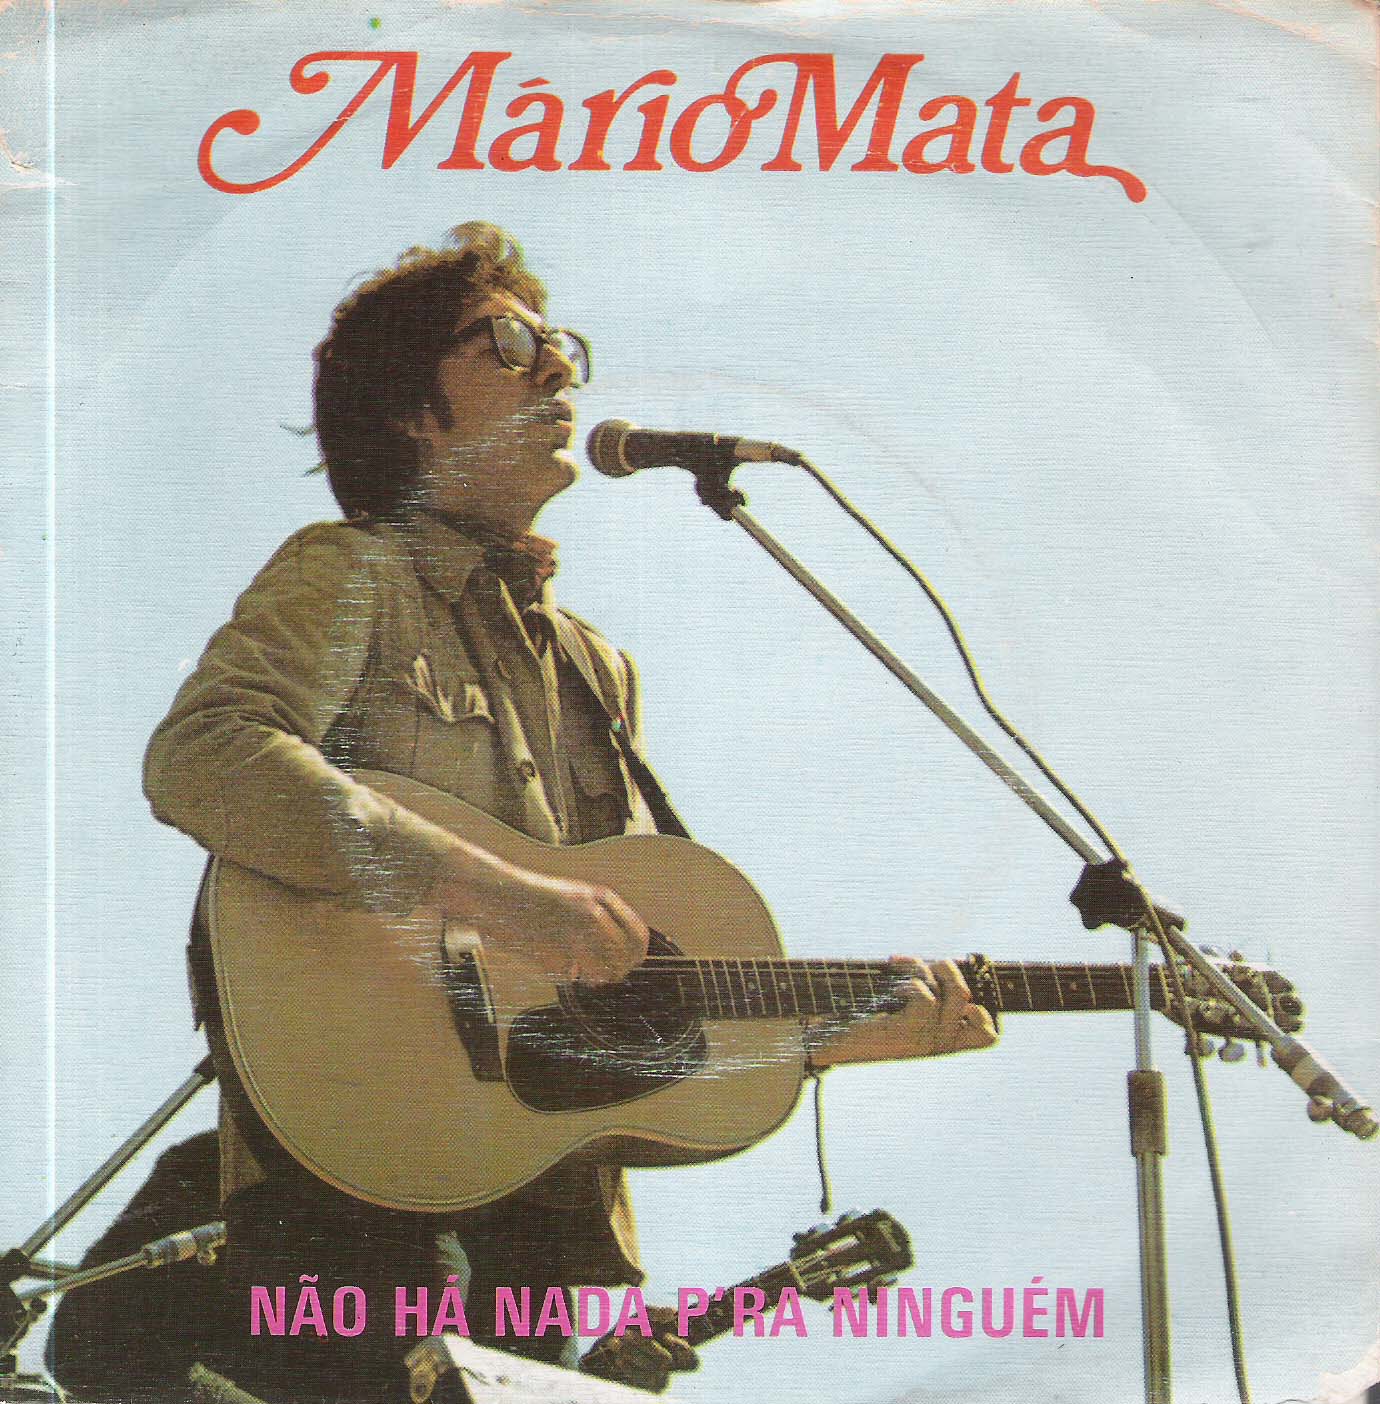 Nao Ha Nada Para Ninguem [1980]